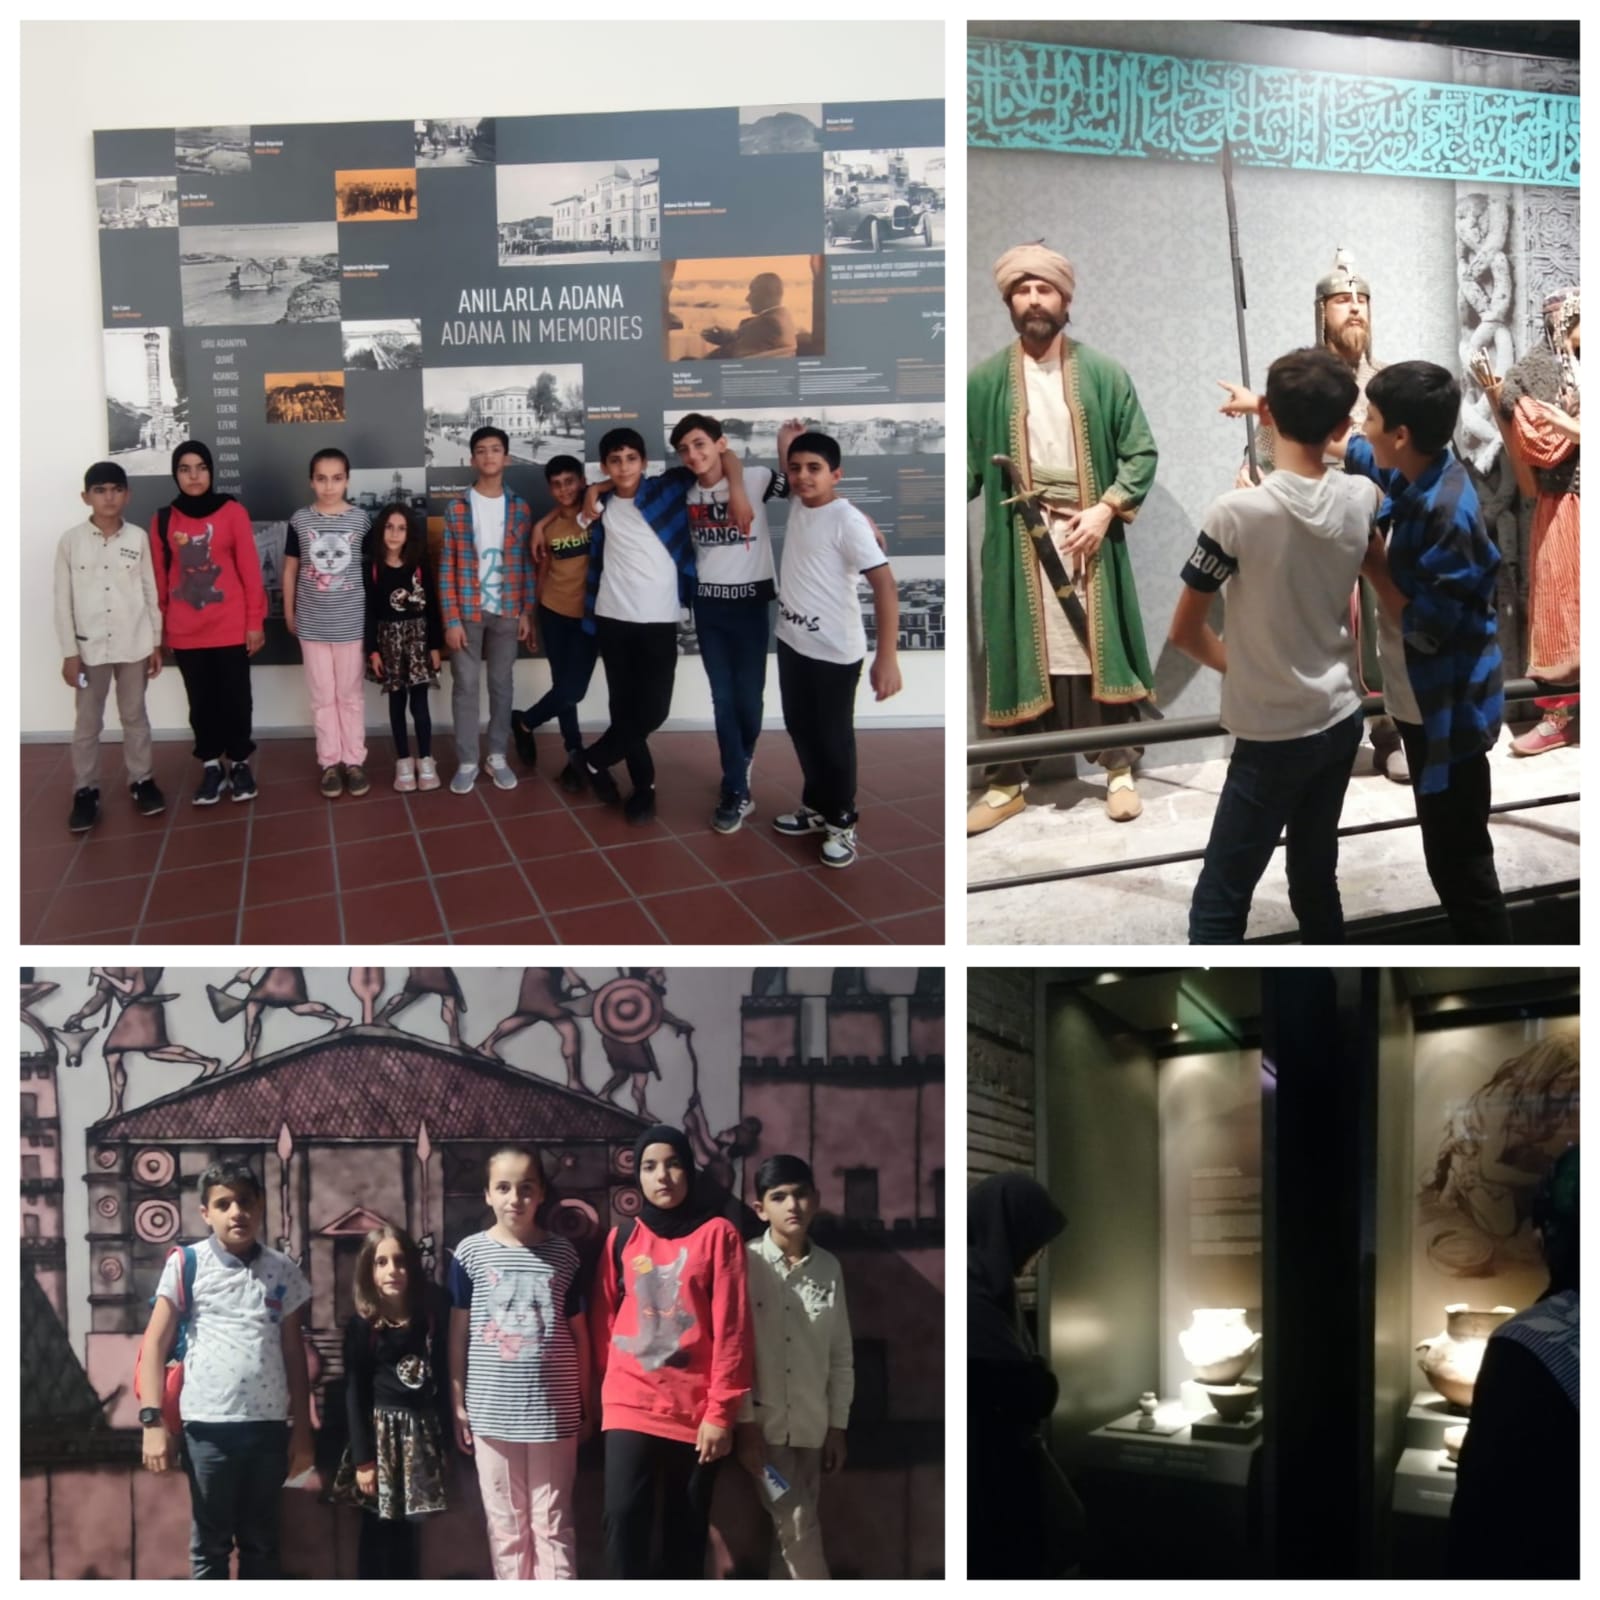 Ülfet Derneği Yetim Komisyonu, Adana Müzesi gezi etkinliği gerçekleştirdi.